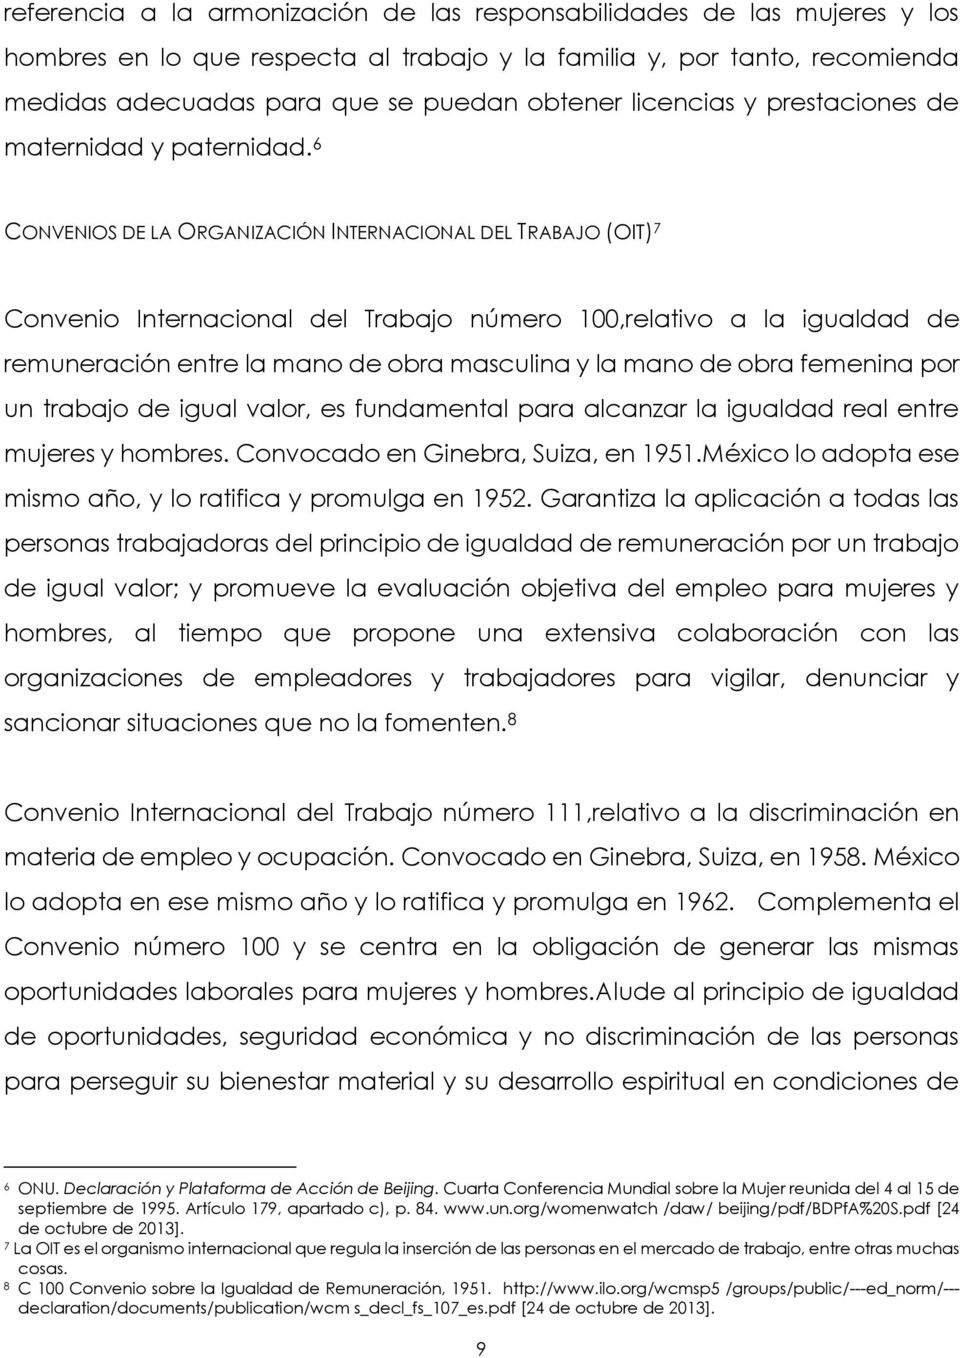 6 CONVENIOS DE LA ORGANIZACIÓN INTERNACIONAL DEL TRABAJO (OIT) 7 Convenio Internacional del Trabajo número 100,relativo a la igualdad de remuneración entre la mano de obra masculina y la mano de obra